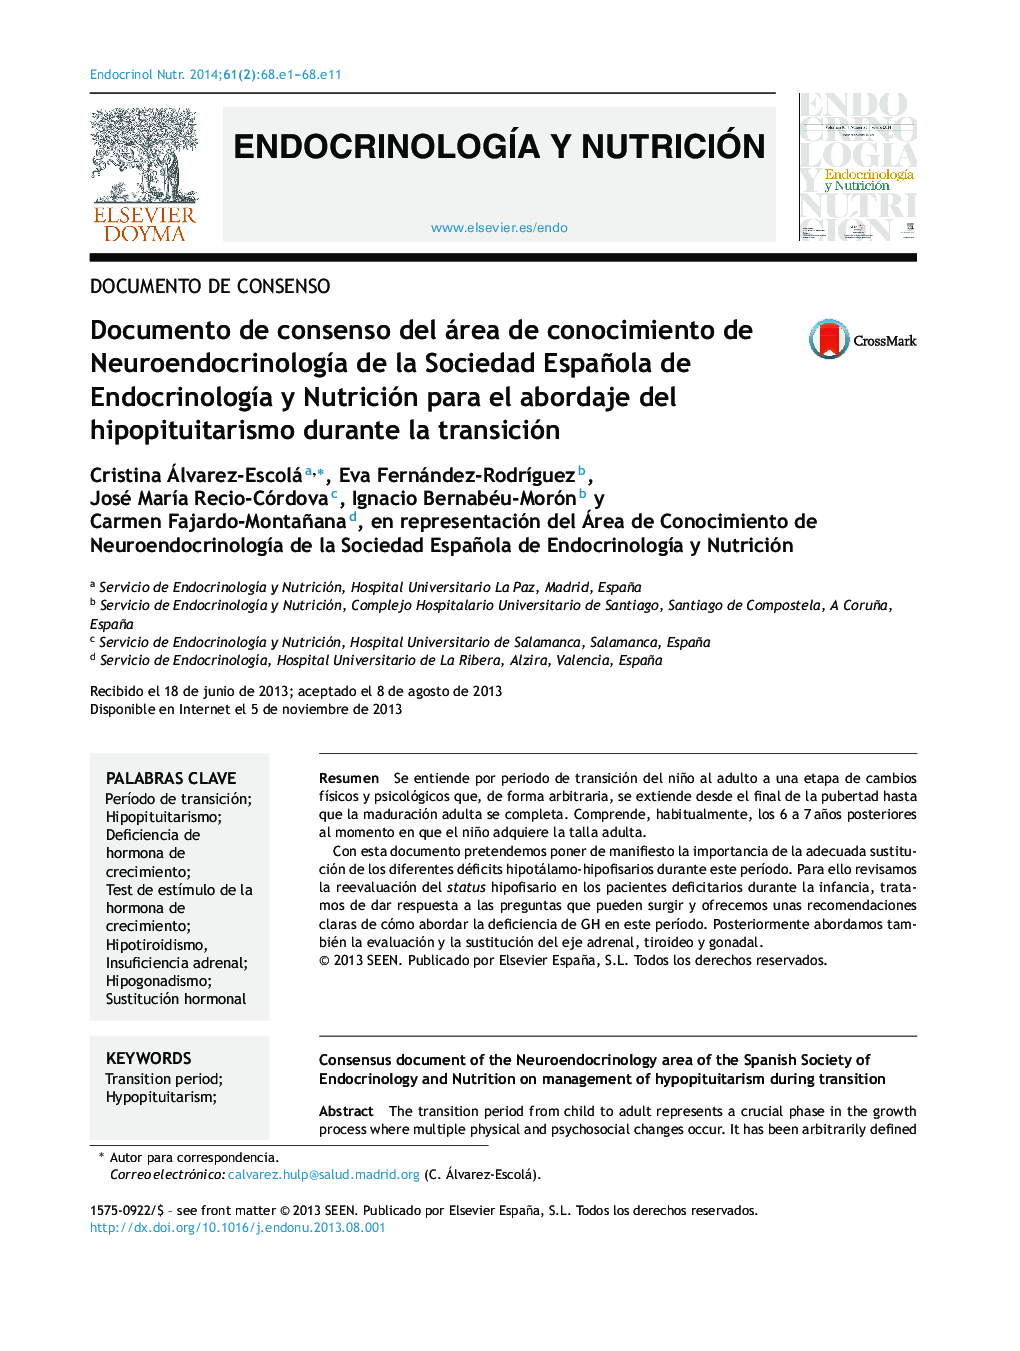 Documento de consenso del área de conocimiento de NeuroendocrinologÃ­a de la Sociedad Española de EndocrinologÃ­a y Nutrición para el abordaje del hipopituitarismo durante la transición